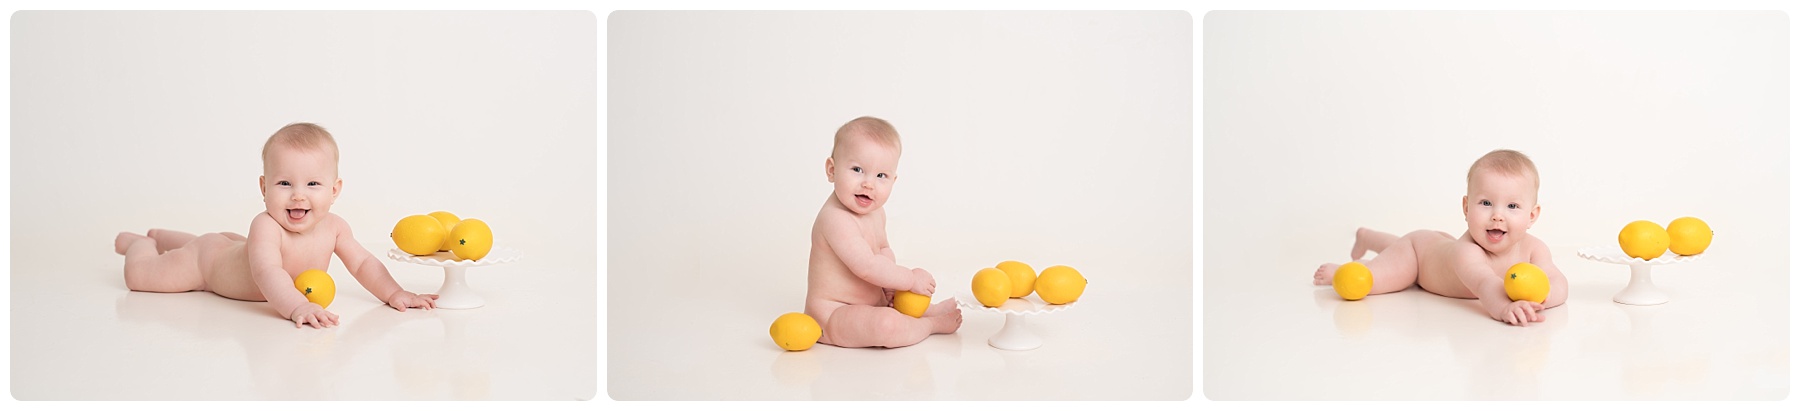 baby girl with lemons